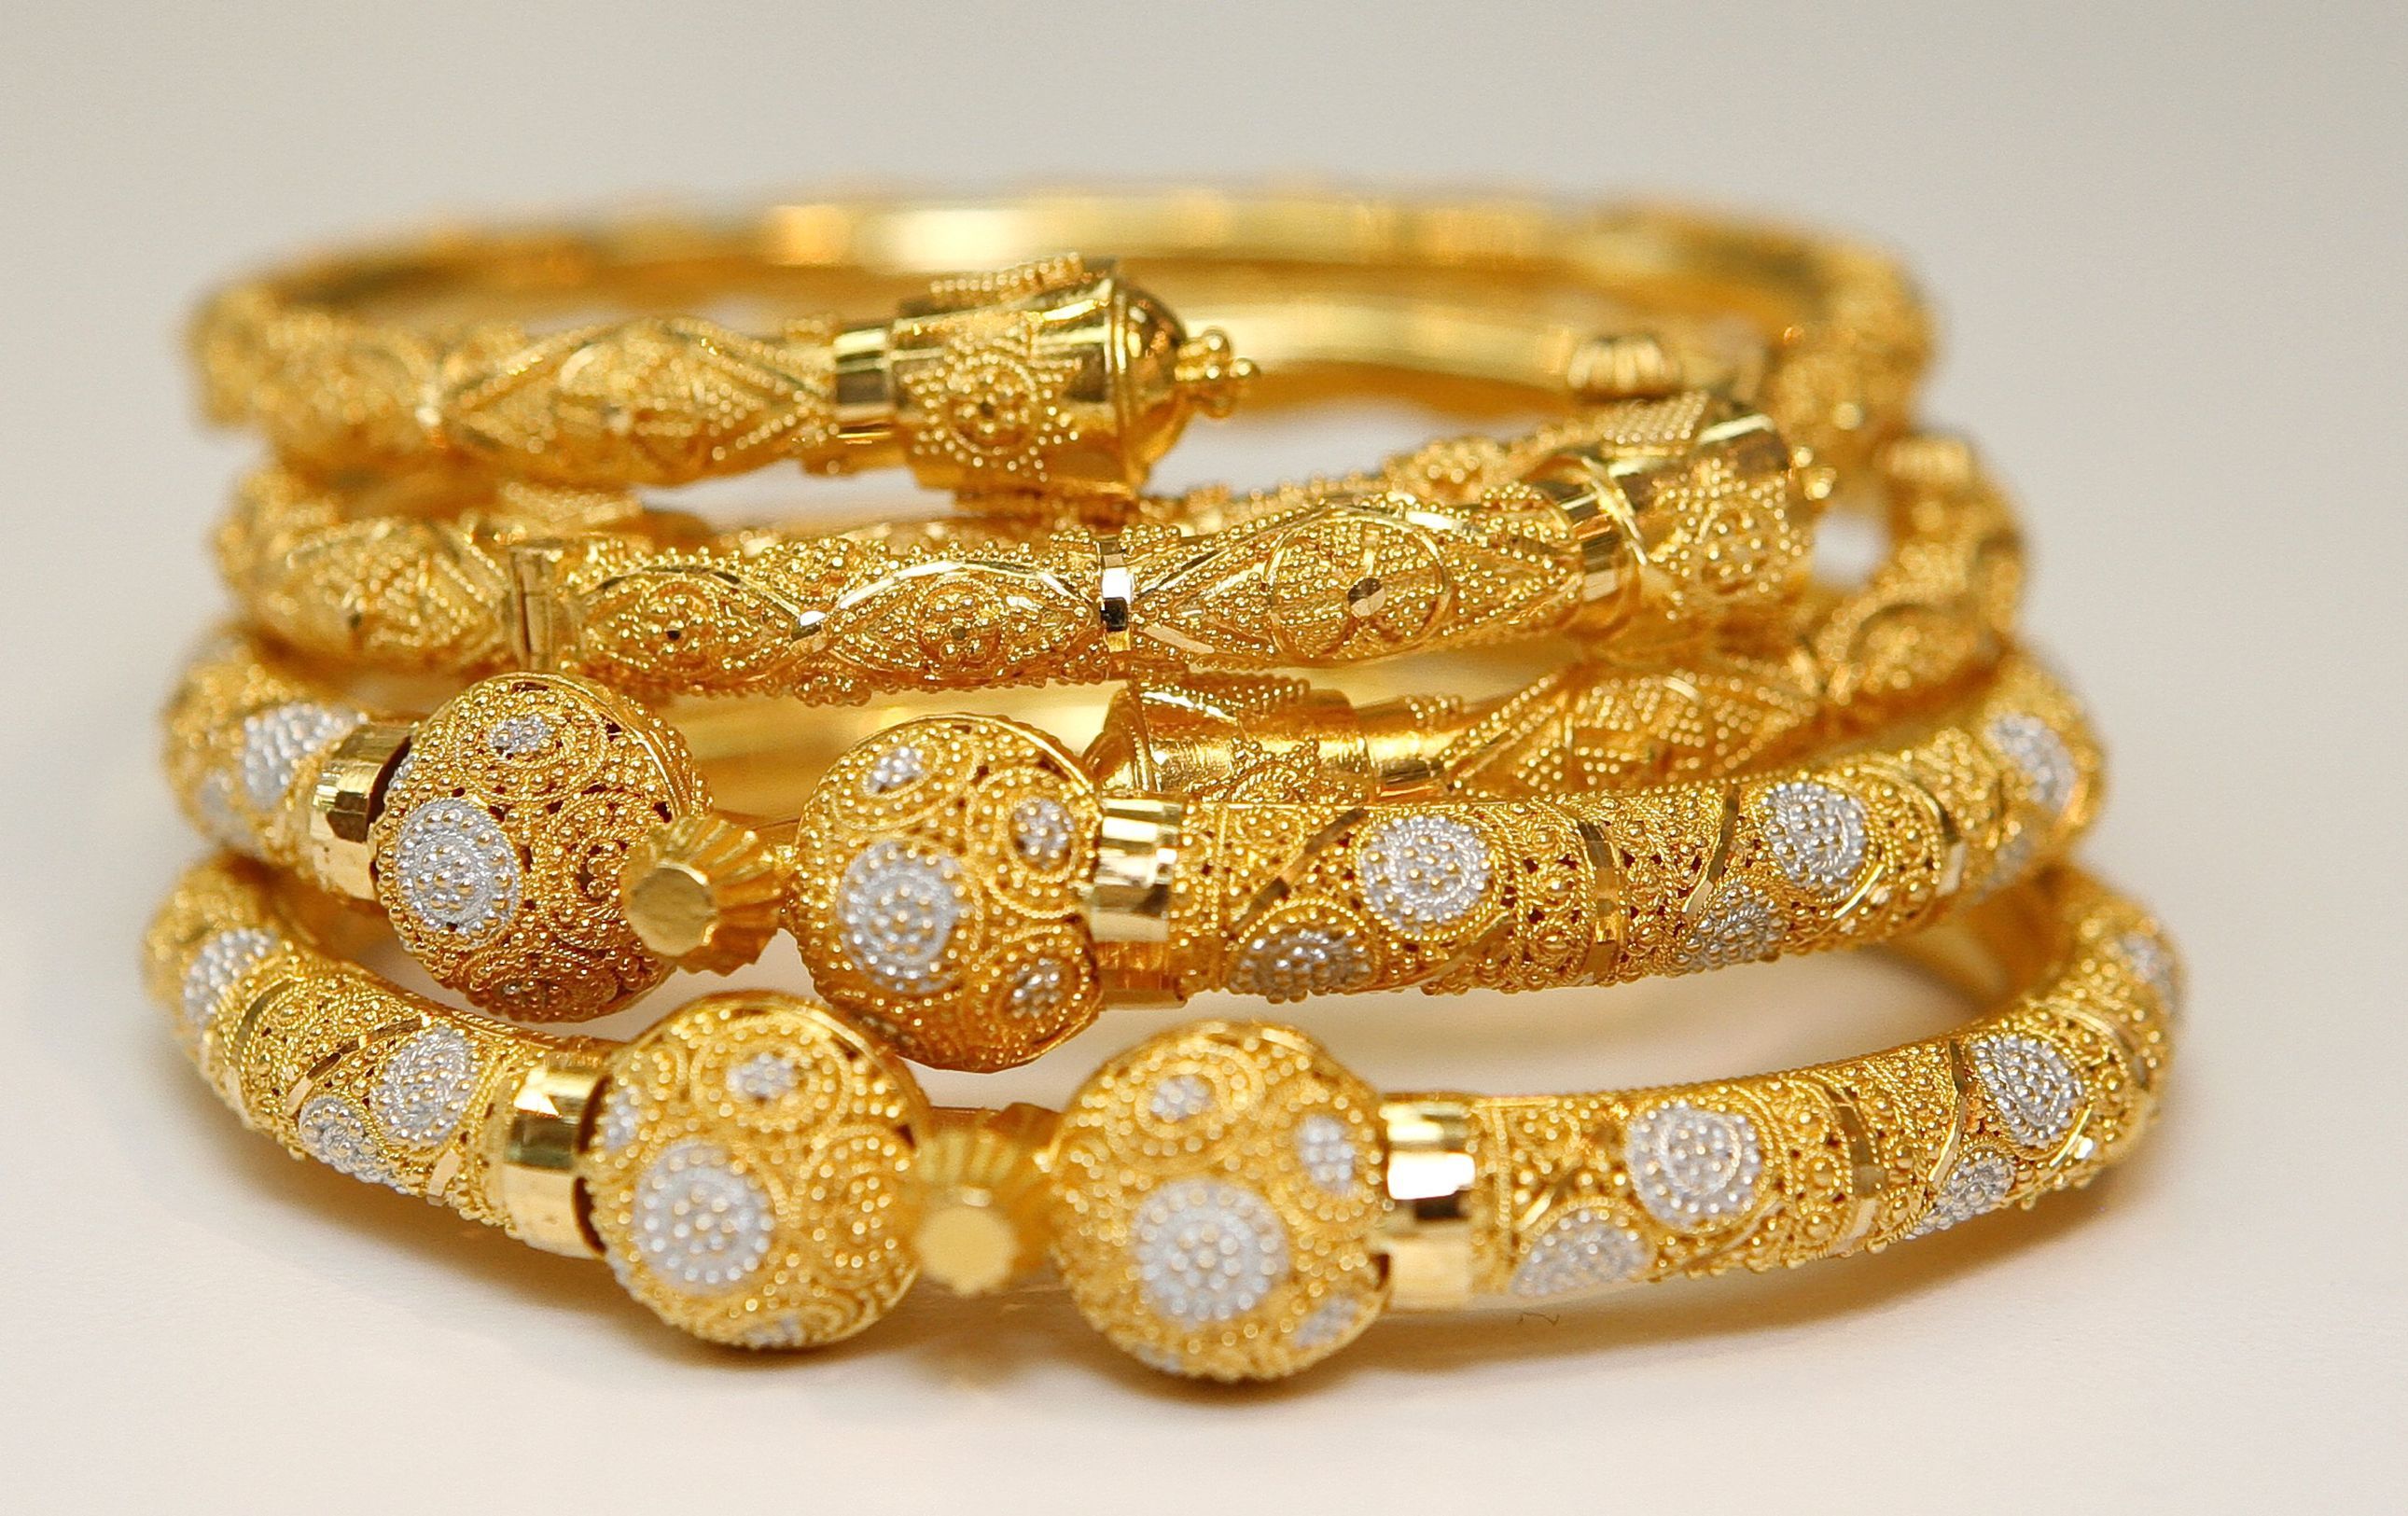 Gold Jewelry ideas. gold jewelry, jewelry, jewelry design